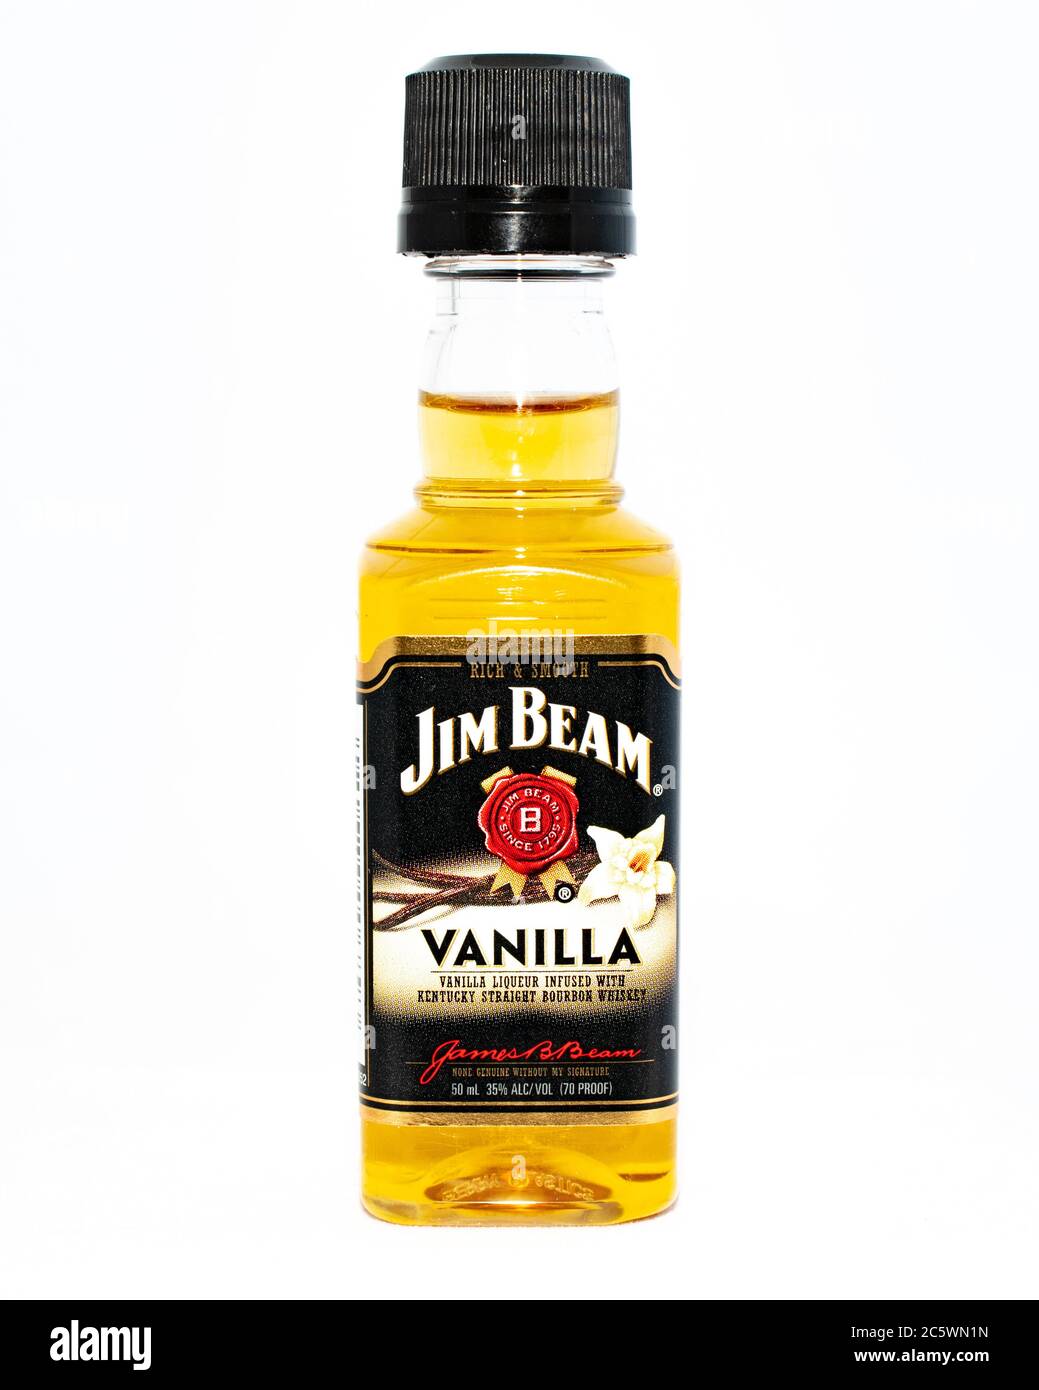 Une bouteille miniature de vanille Jim Beam, une liqueur de vanille imprégnée de whisky Bourbon droit Kentucky isolée sur blanc Banque D'Images